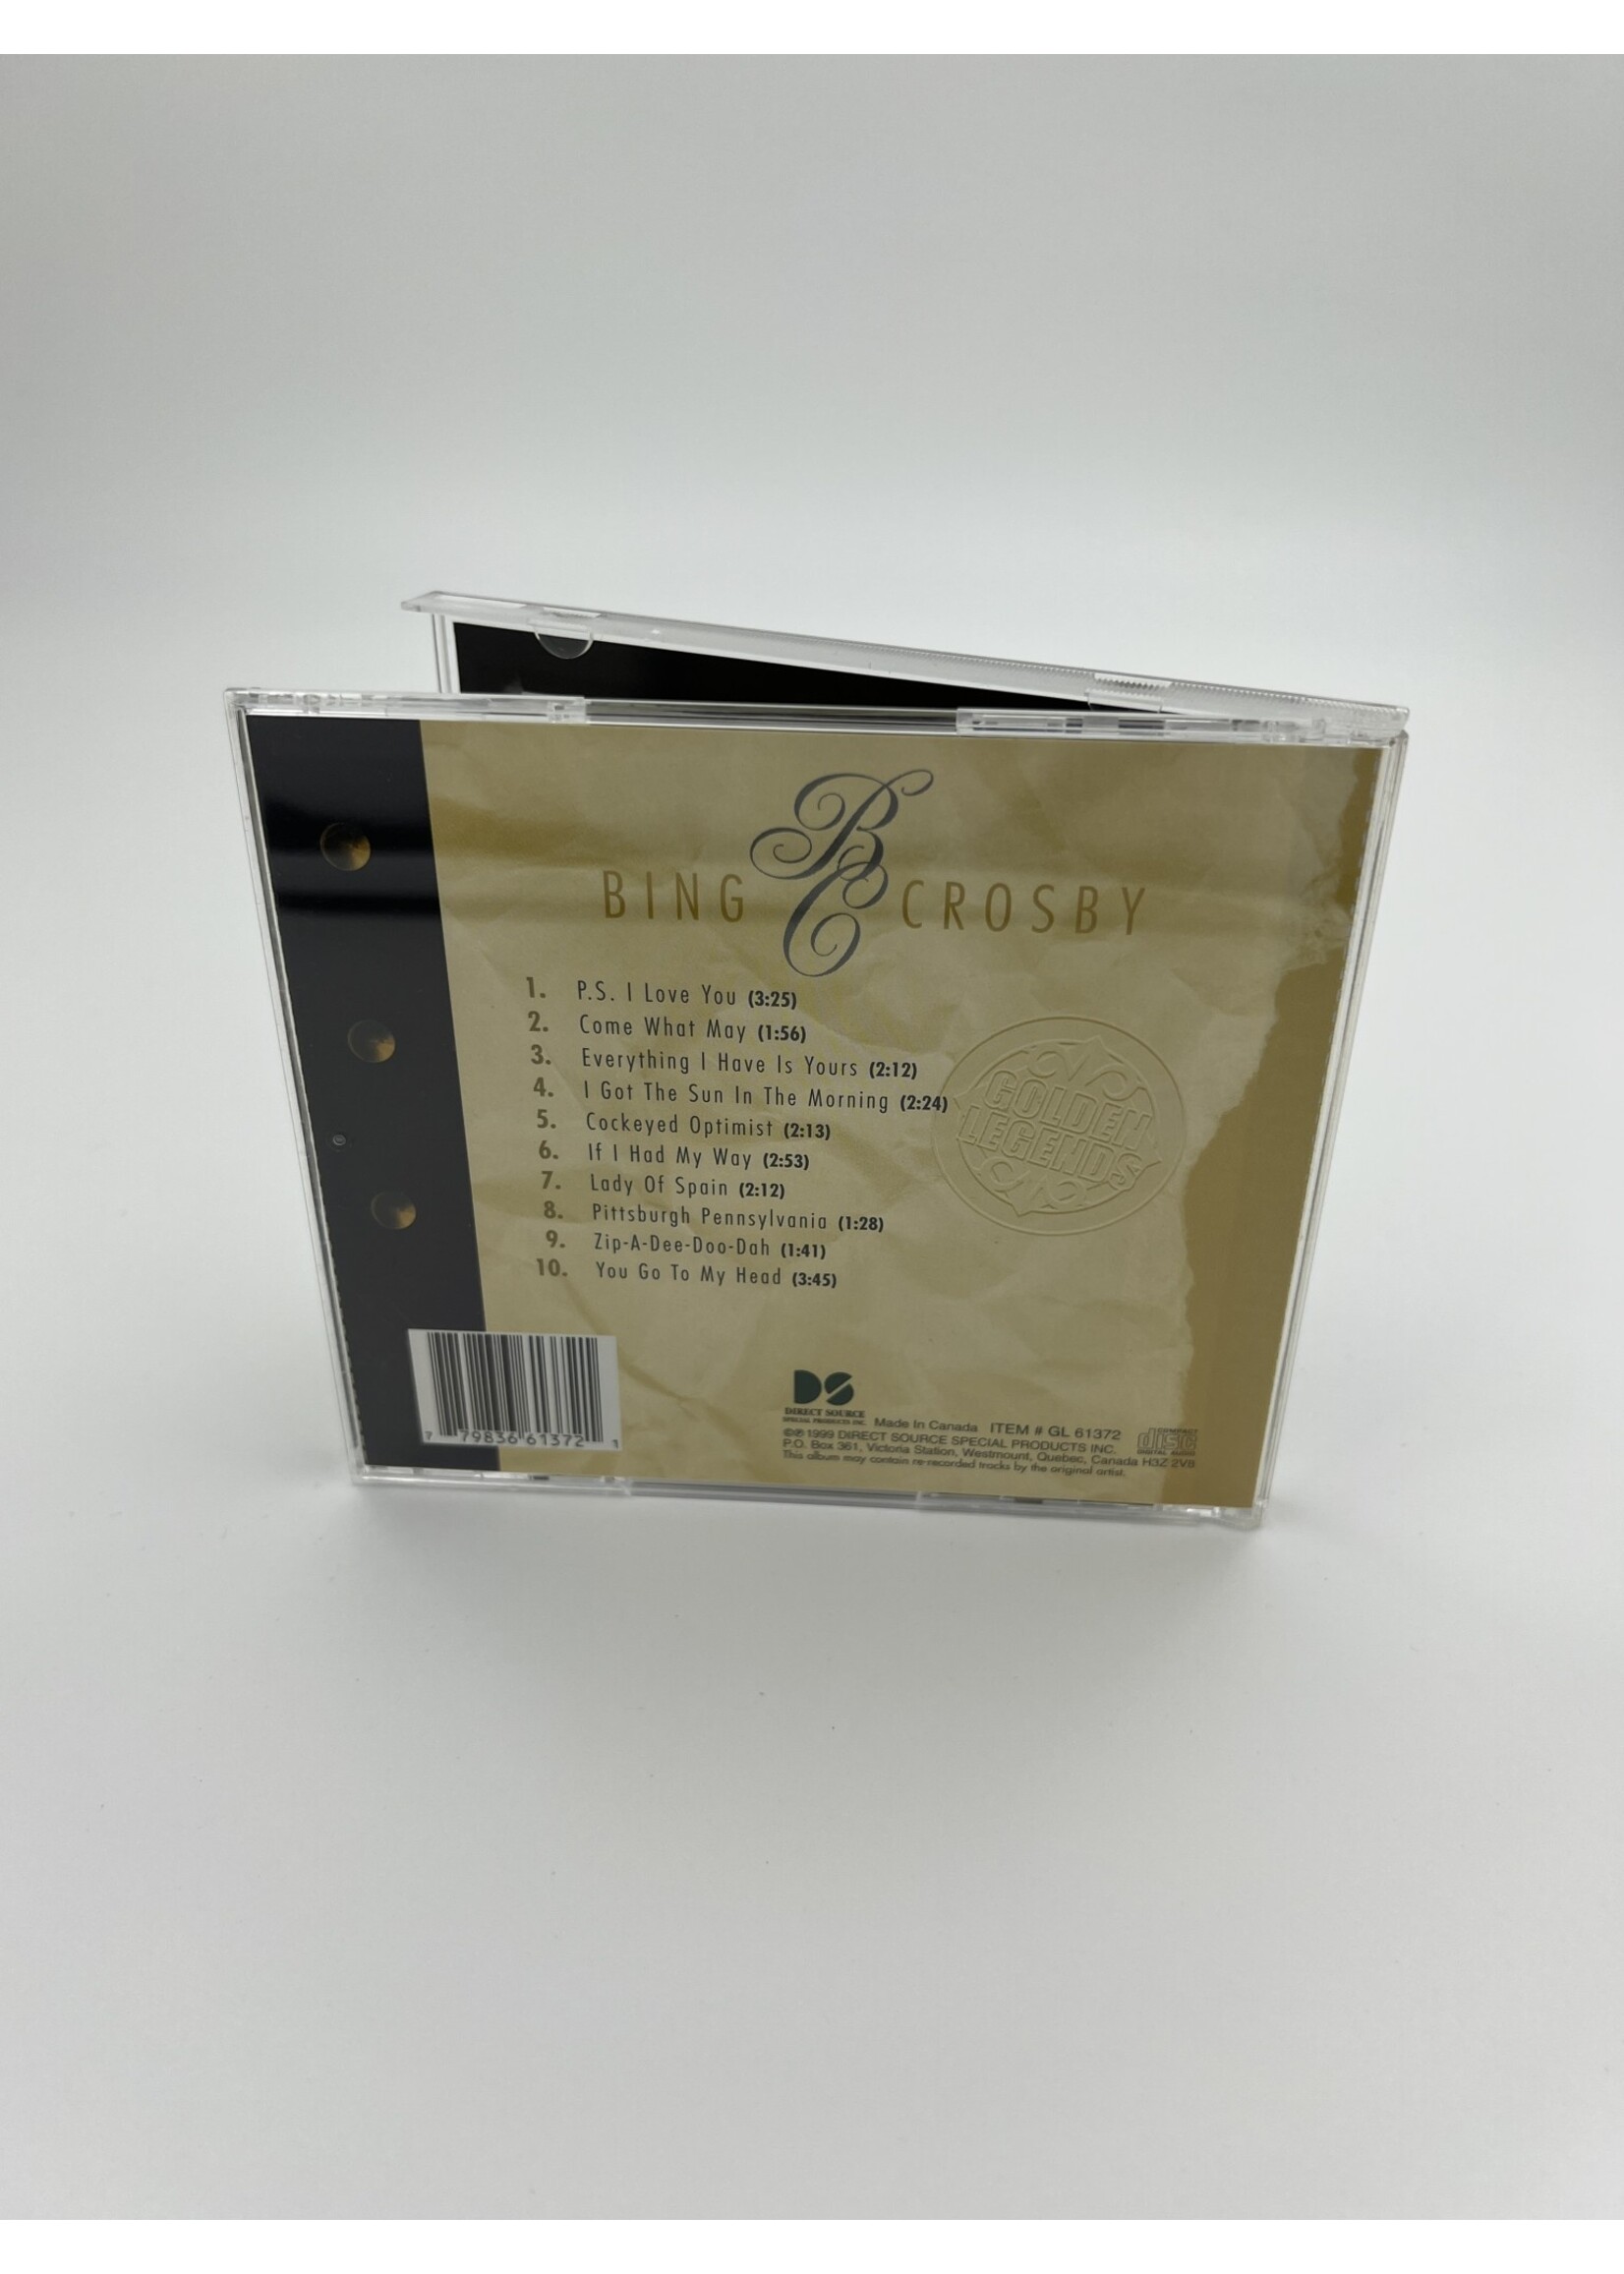 CD Bing Crosby Golden Legends CD